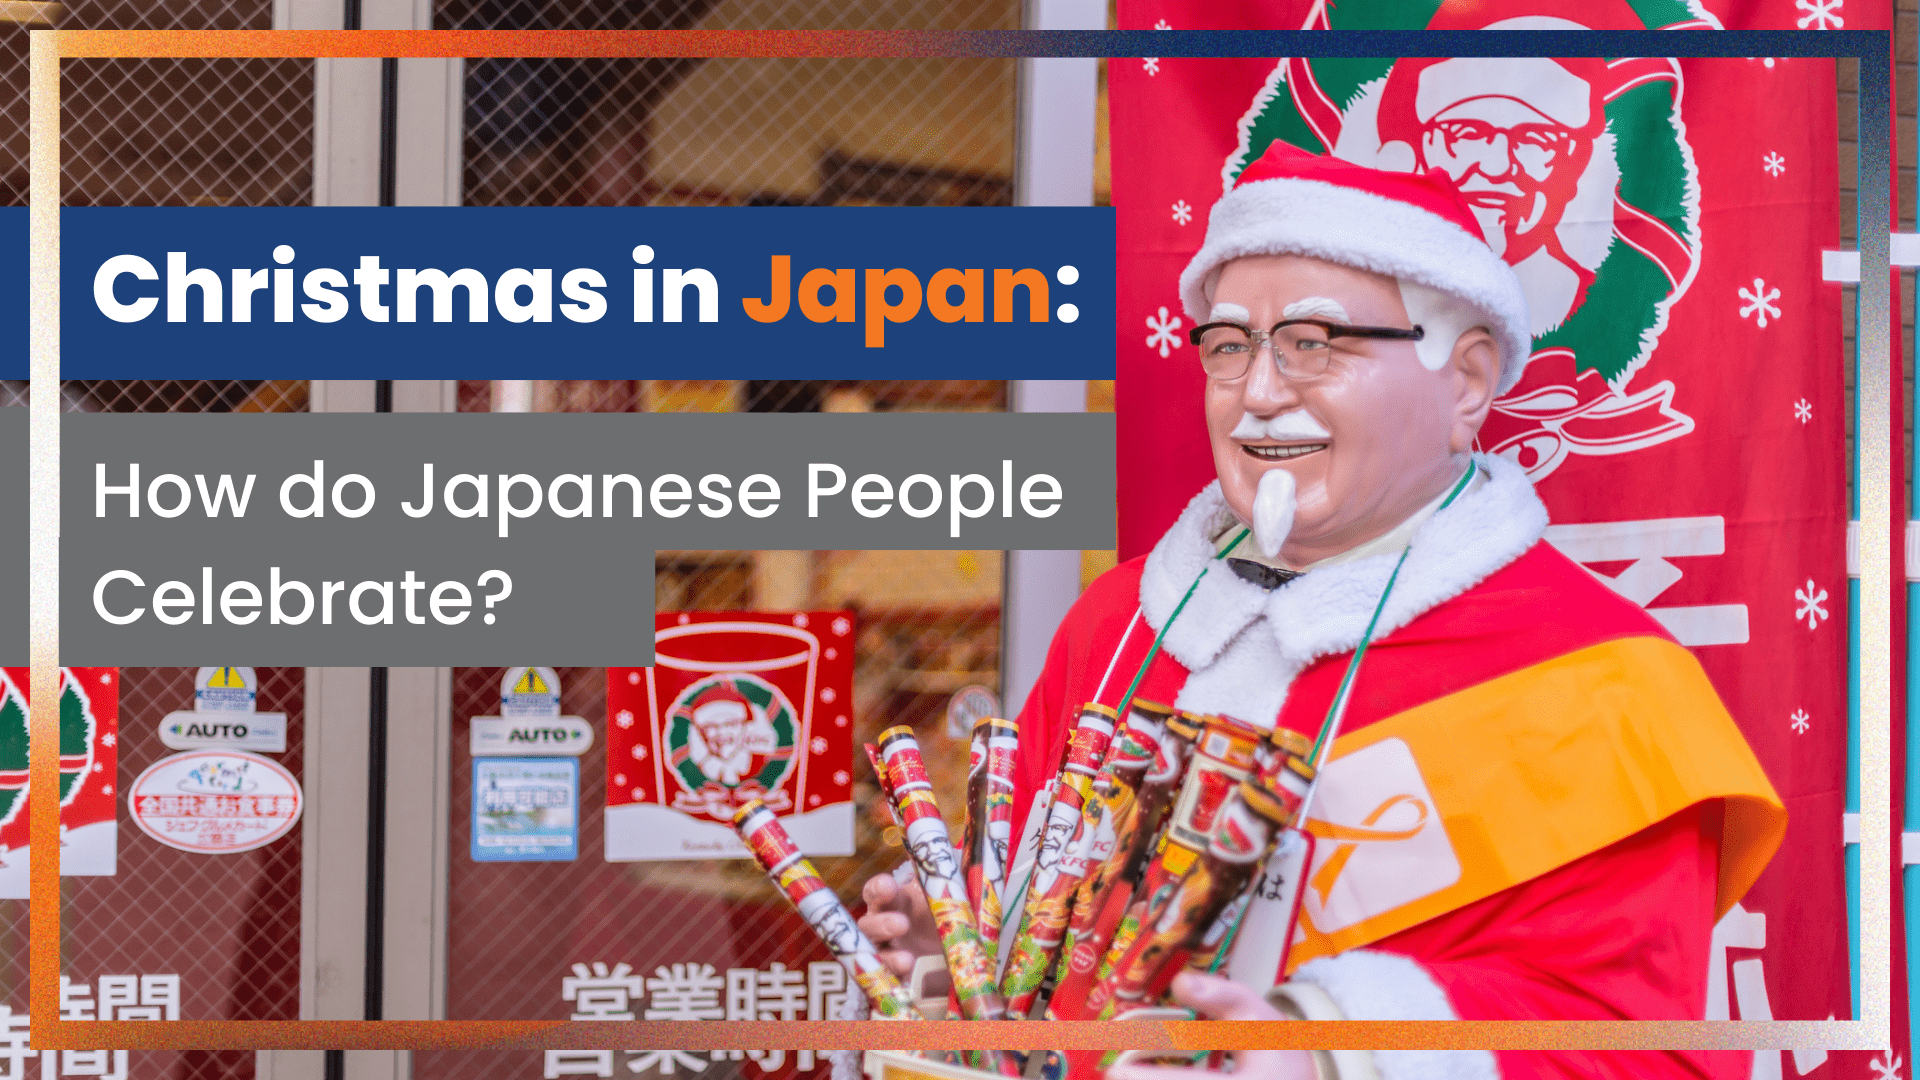 일본에서는 크리스마스를 어떻게 축하하나요? 